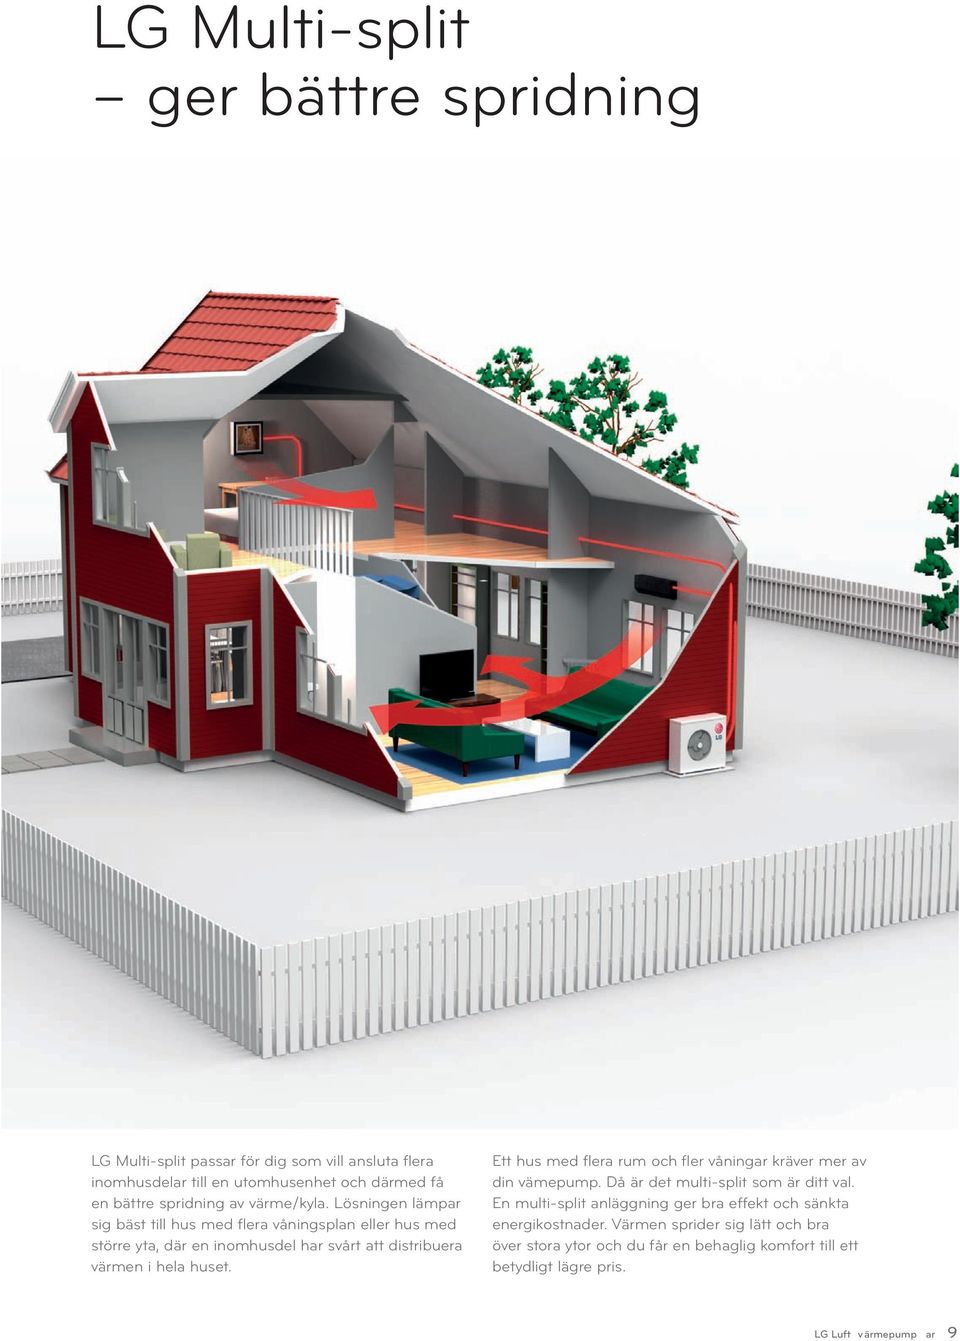 Lösningen lämpar sig bäst till hus med flera våningsplan eller hus med större yta, där en inomhusdel har svårt att distribuera värmen i hela huset.